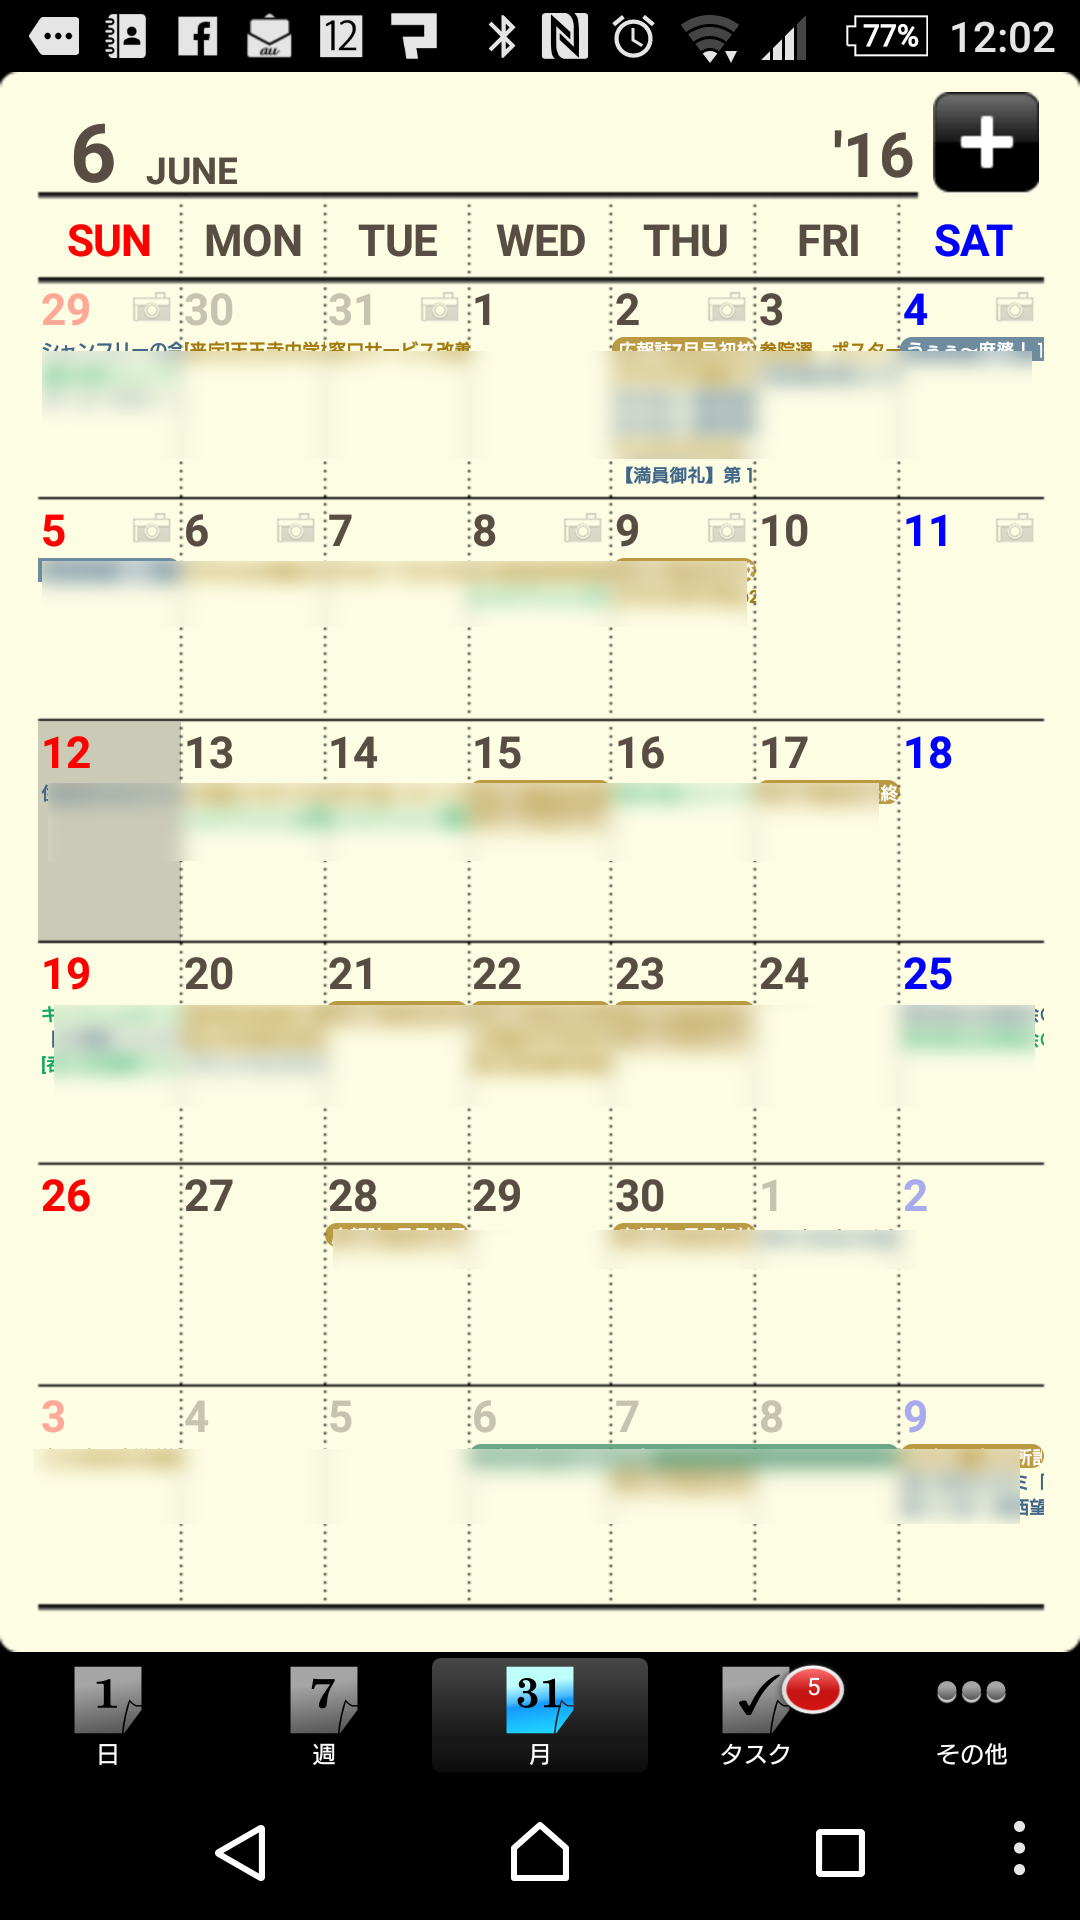 スマホのカレンダーアプリは何がベストか考える 16初夏 Utatane Asia